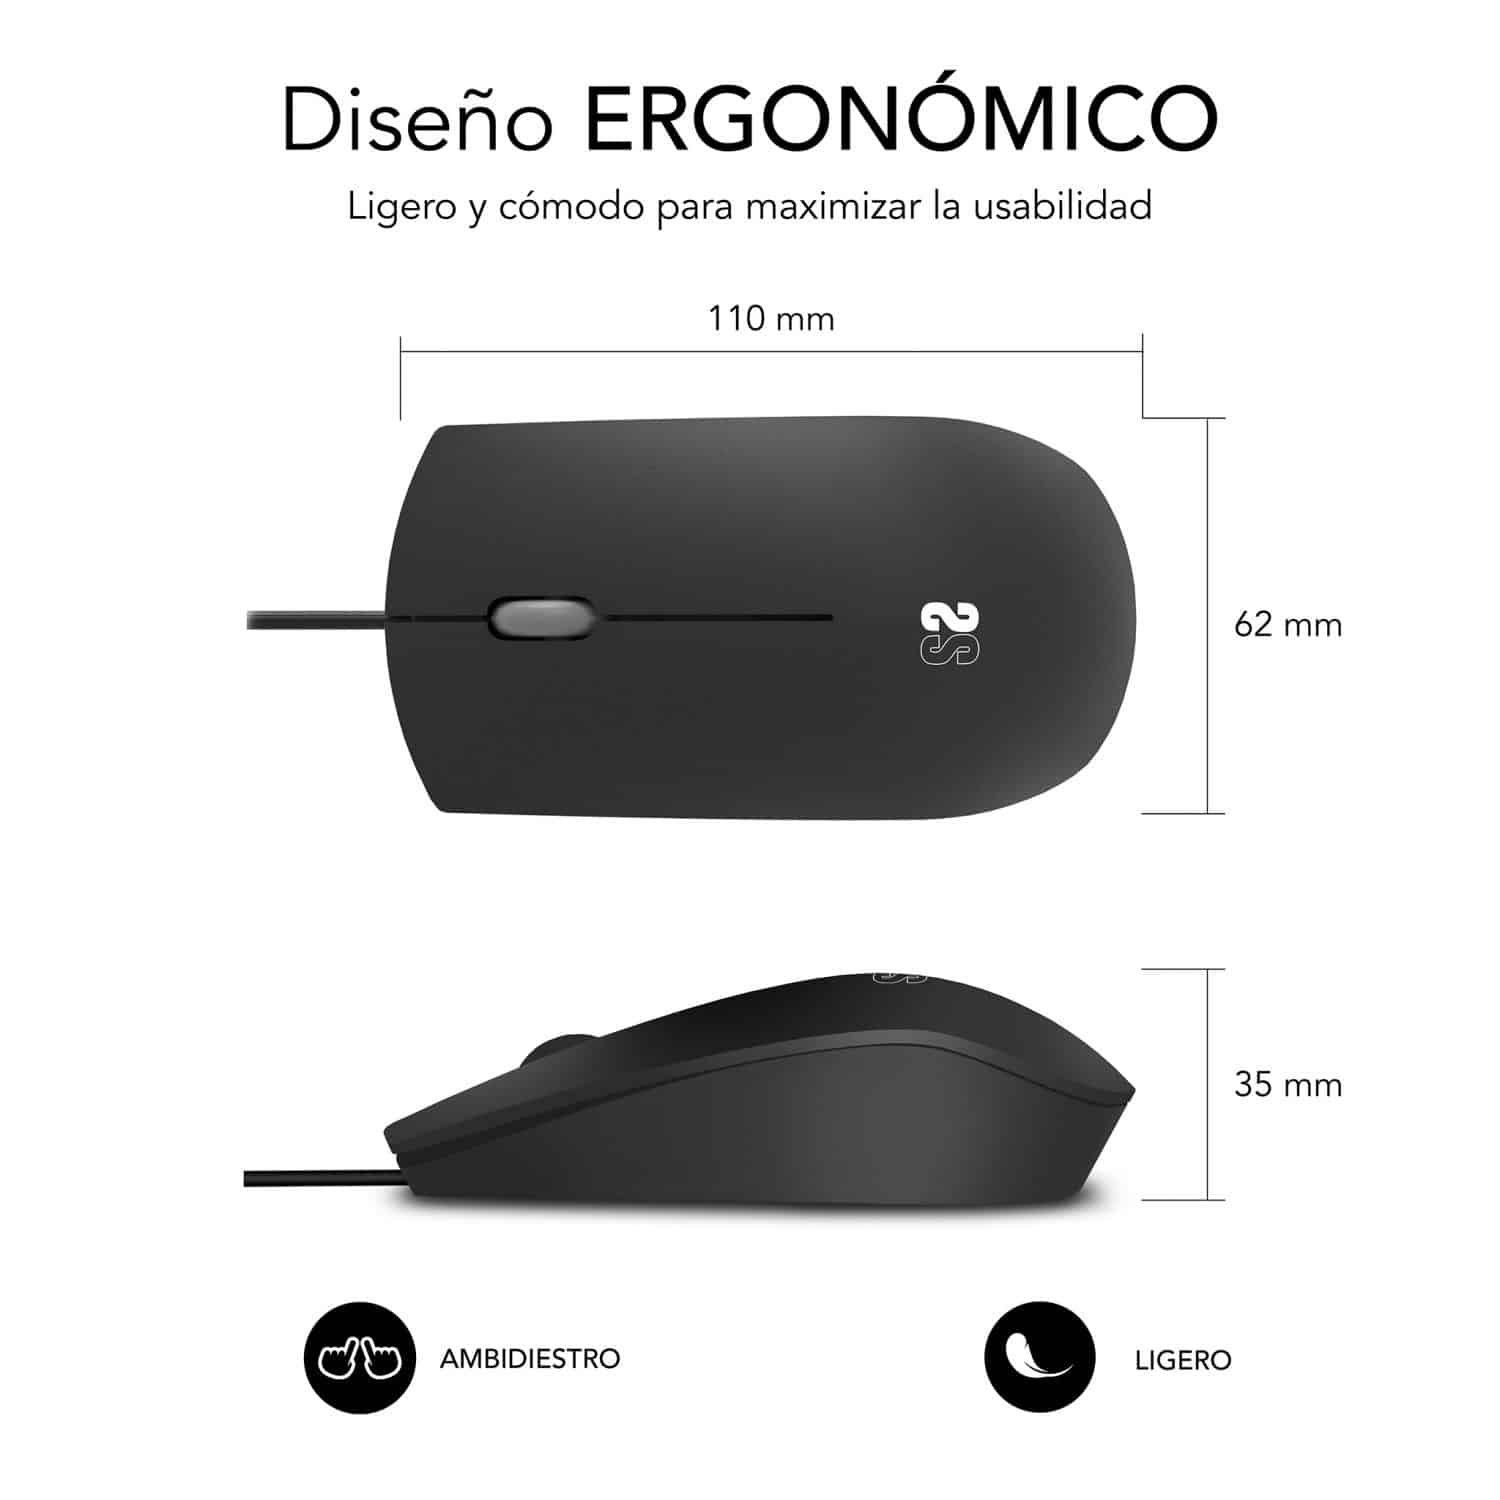 raton con diseño ergonómico que se ajusta a la mano, ambidiestro, gama business, ideal para empresas en color negro